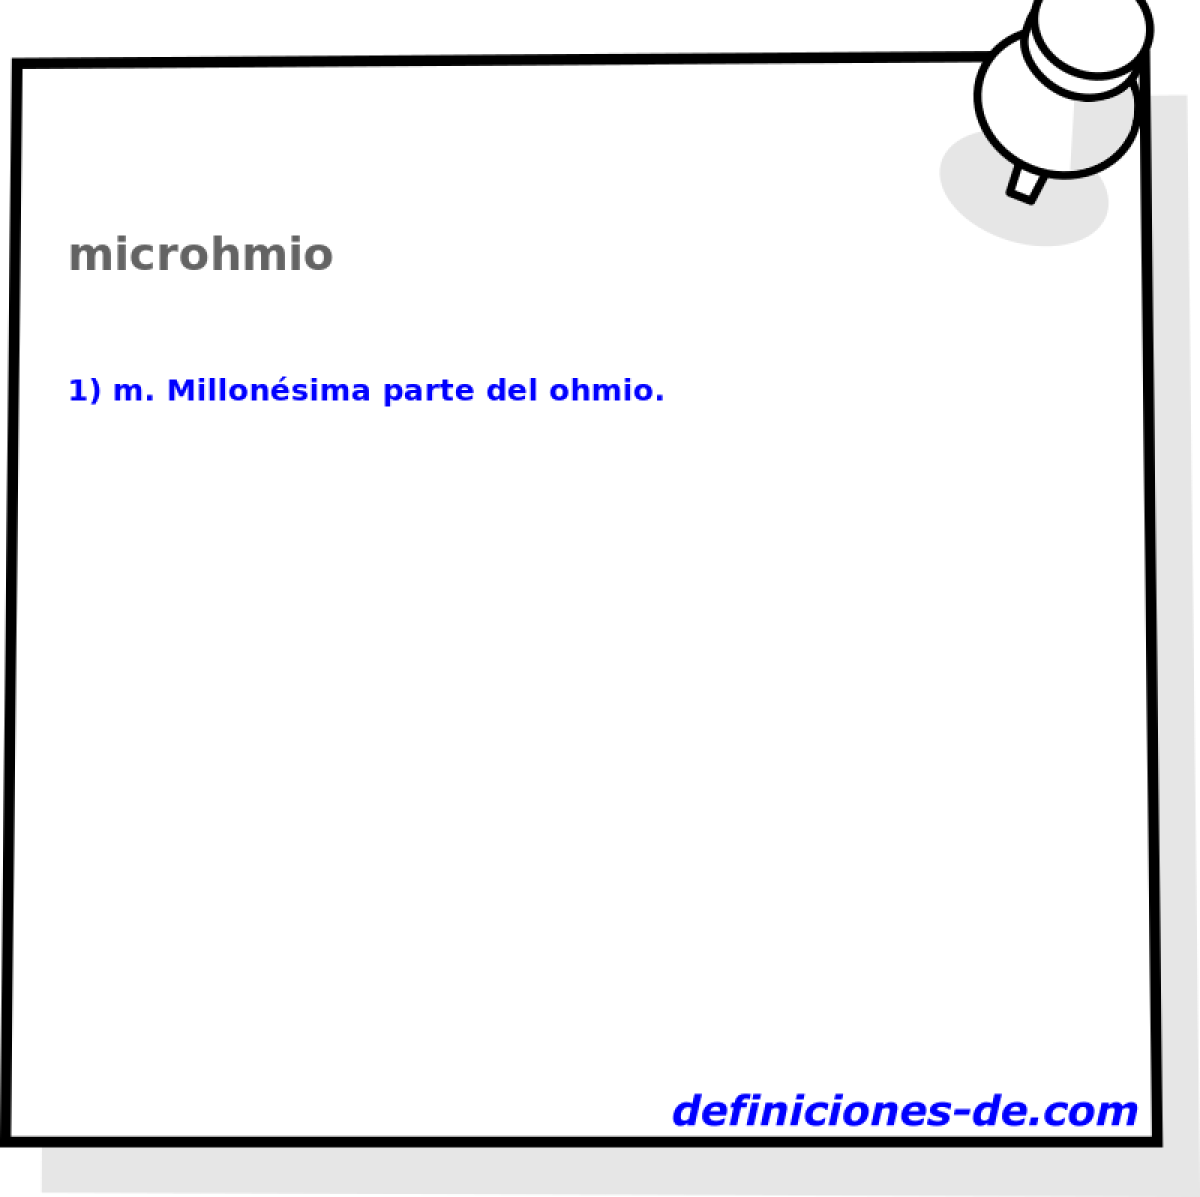 microhmio 